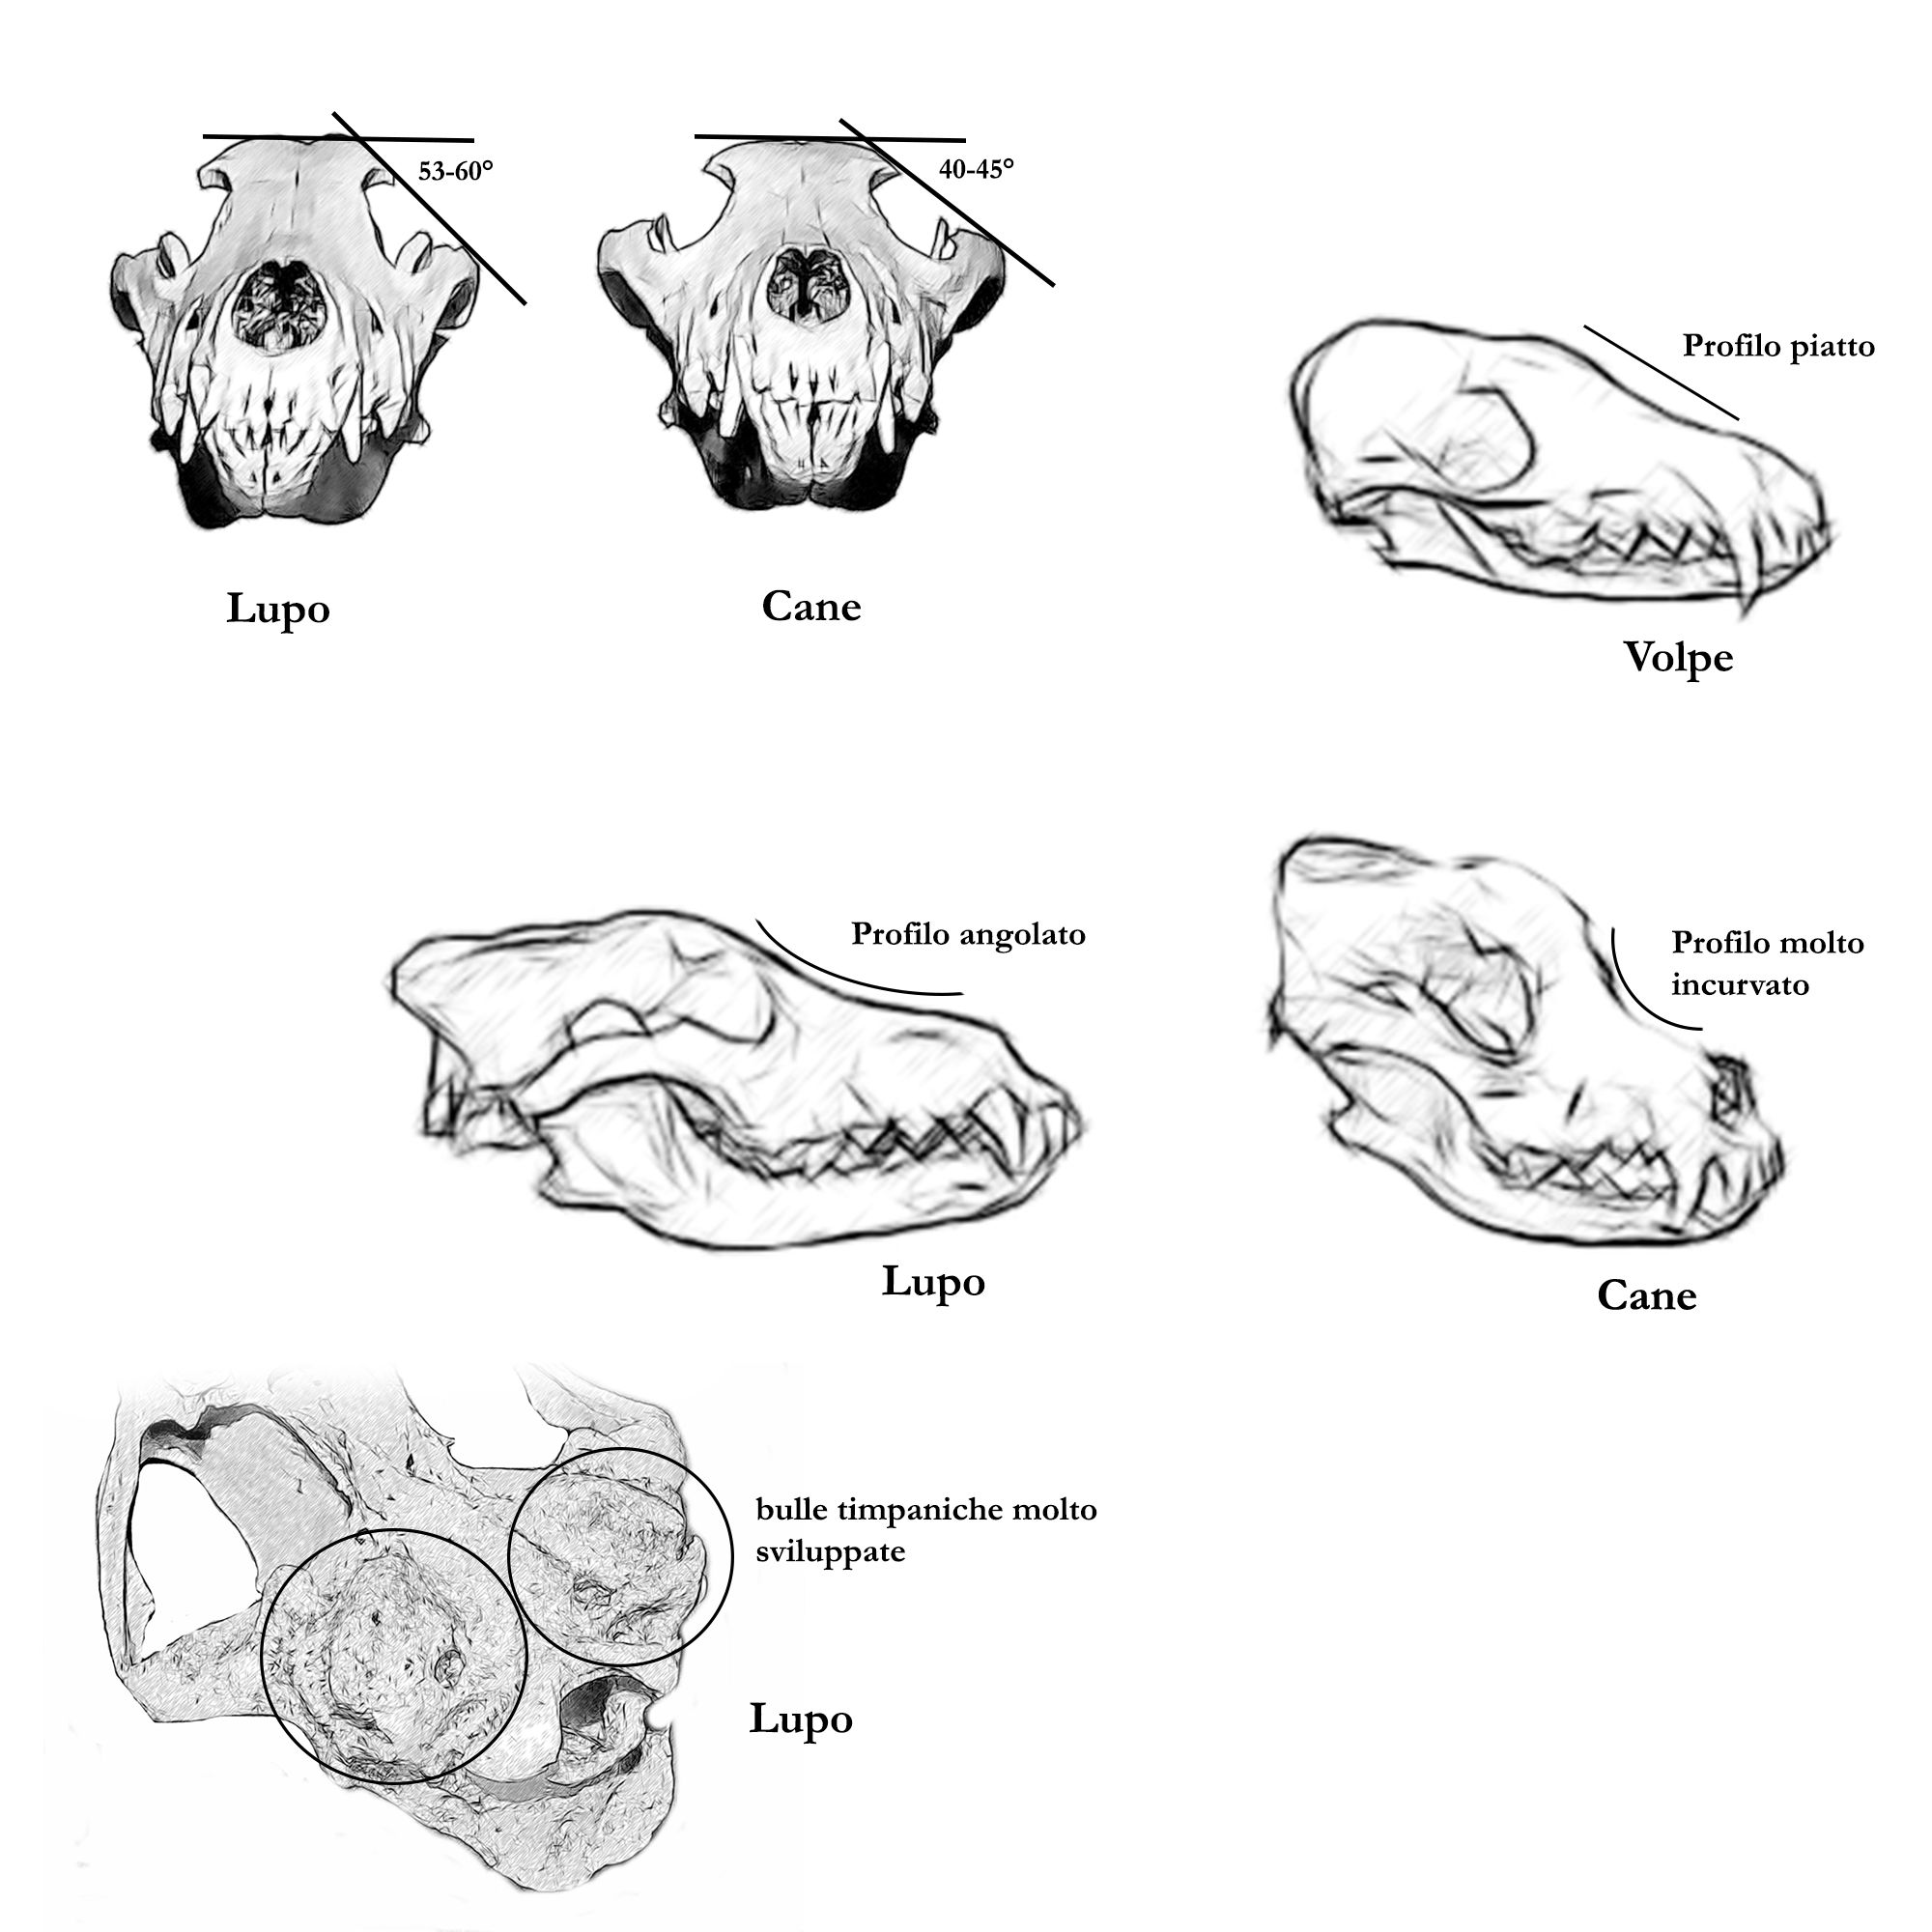 cranio lupo cane volpe, distinzione cranio lupo, cranio lupo cranio cane, riconoscere cranio lupo, differenze cranio lupo cane, differenze cranio lupo volpe, canis lupus, vulpes vulpes, canis lupus familiaris, skull identification, 